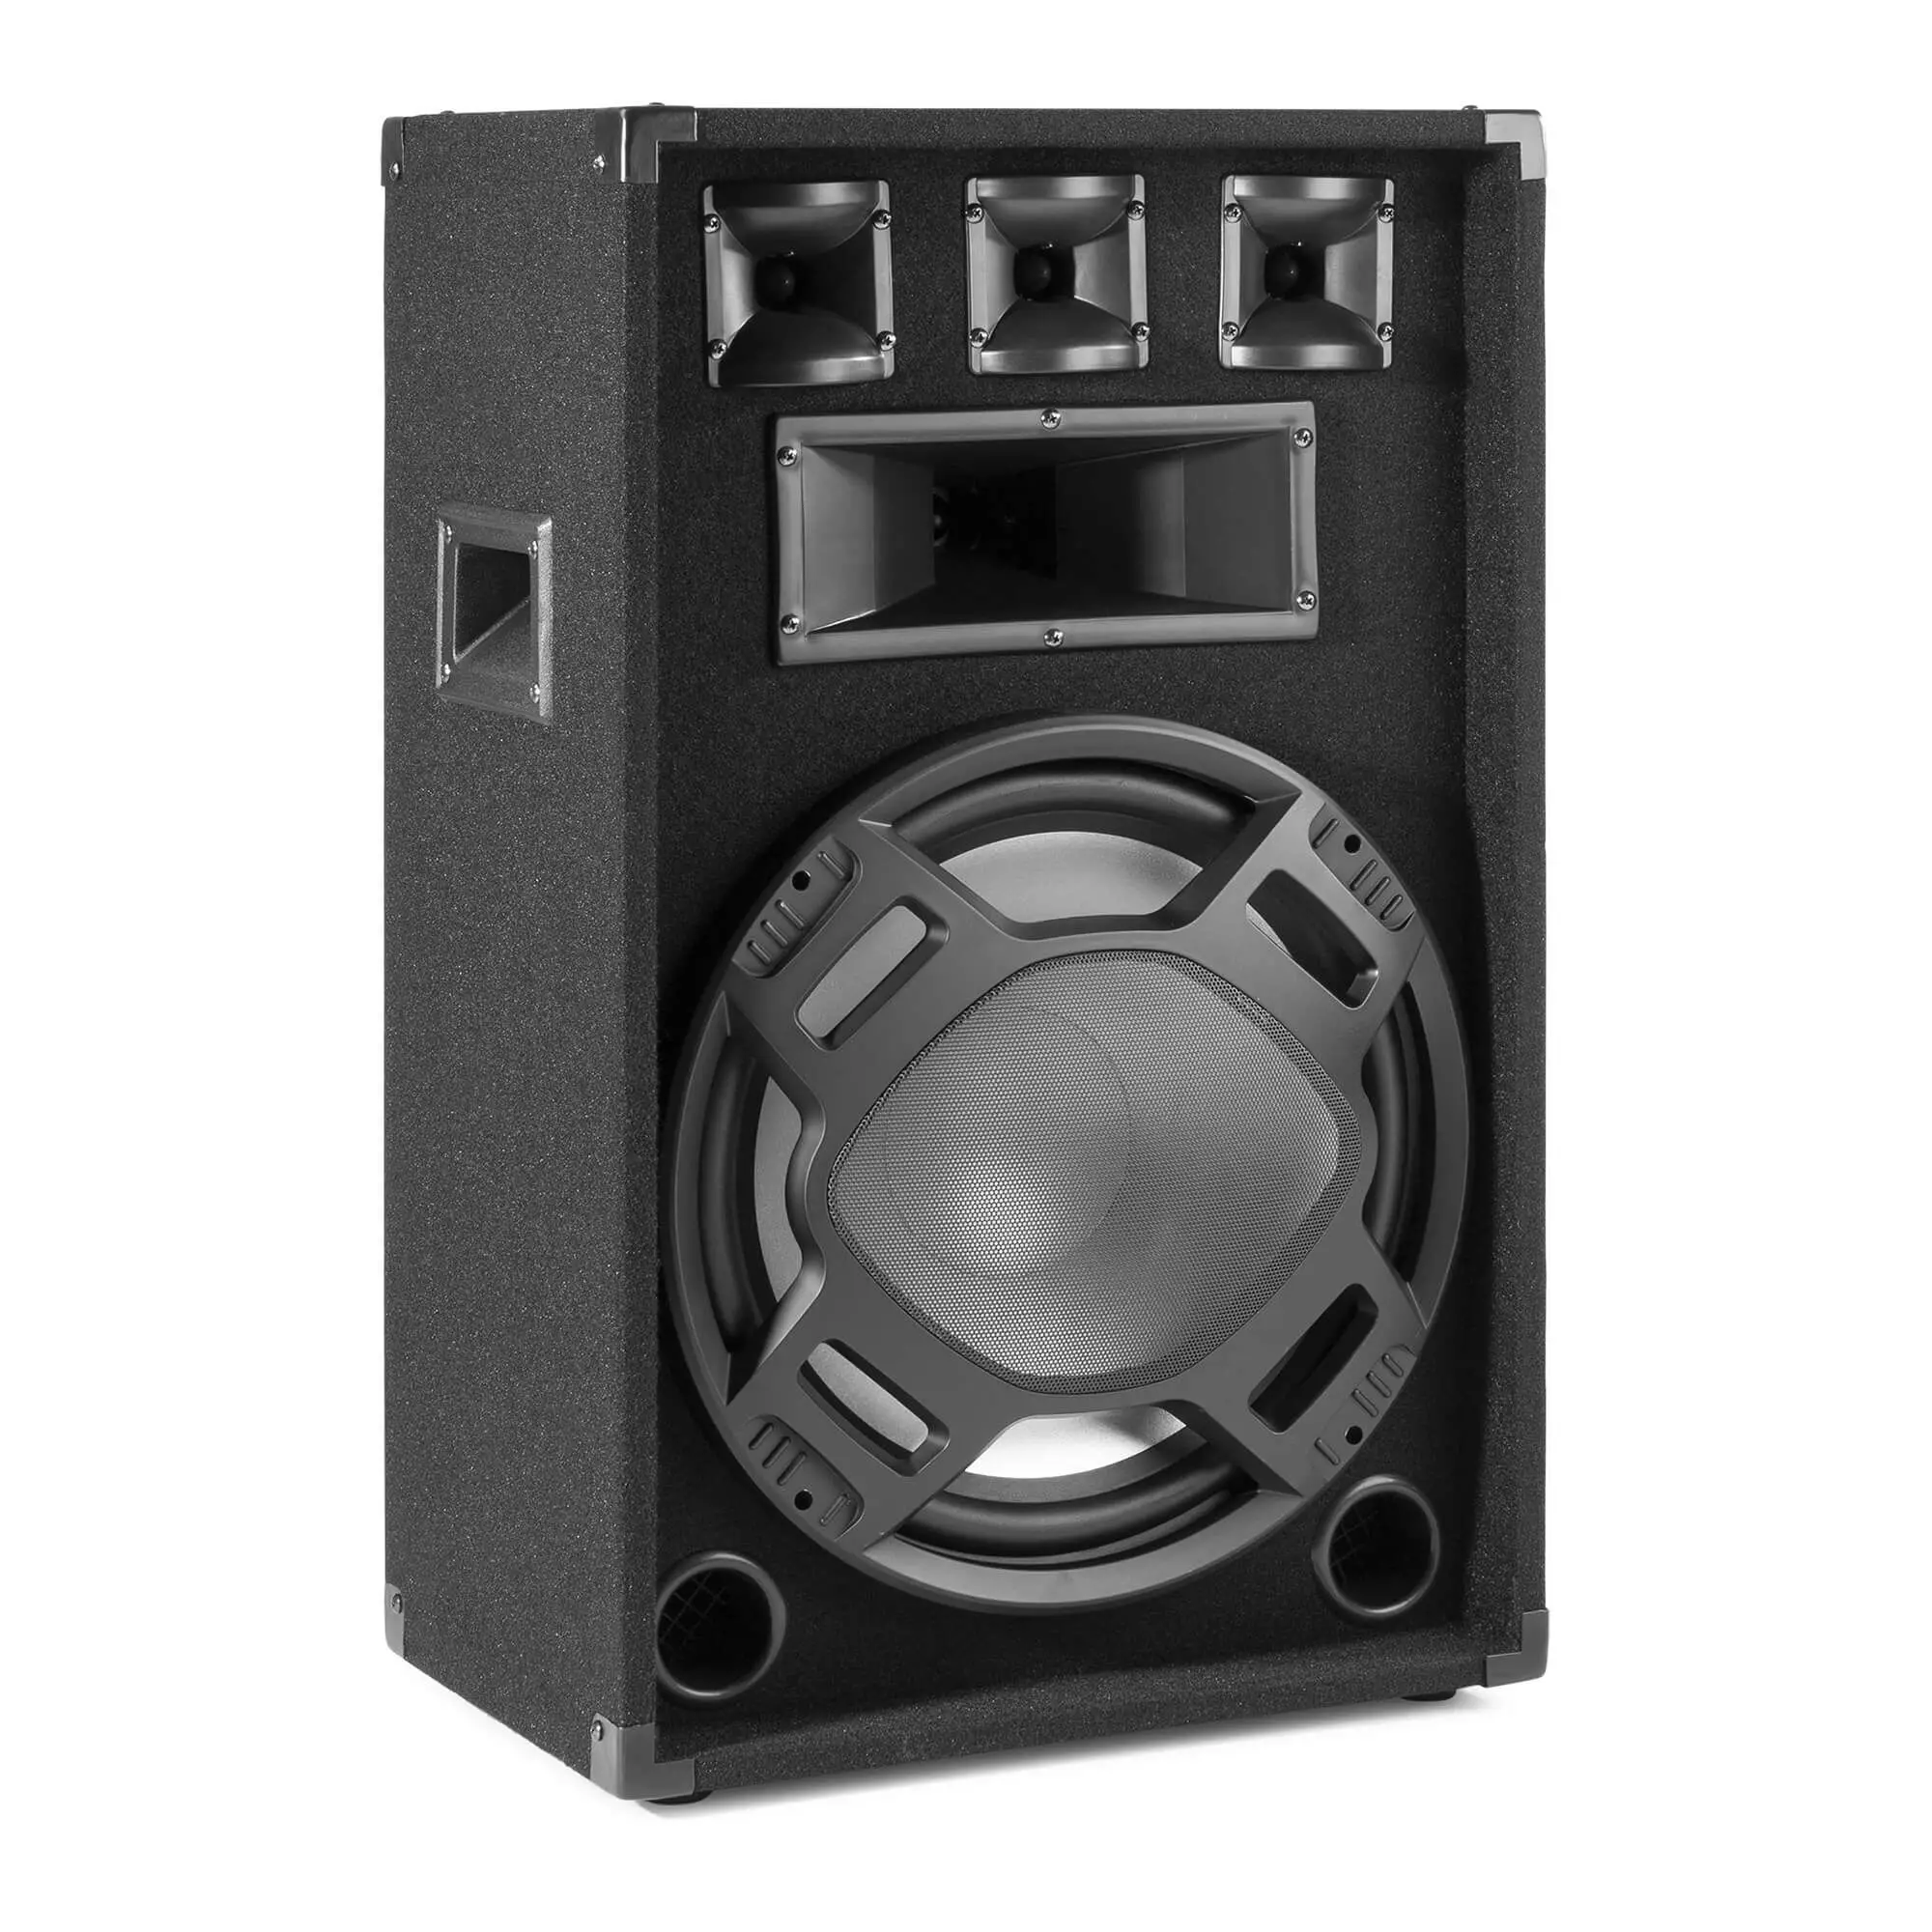 Fenton bs15 disco speaker 15 met ritmische ledaposs 800w 2